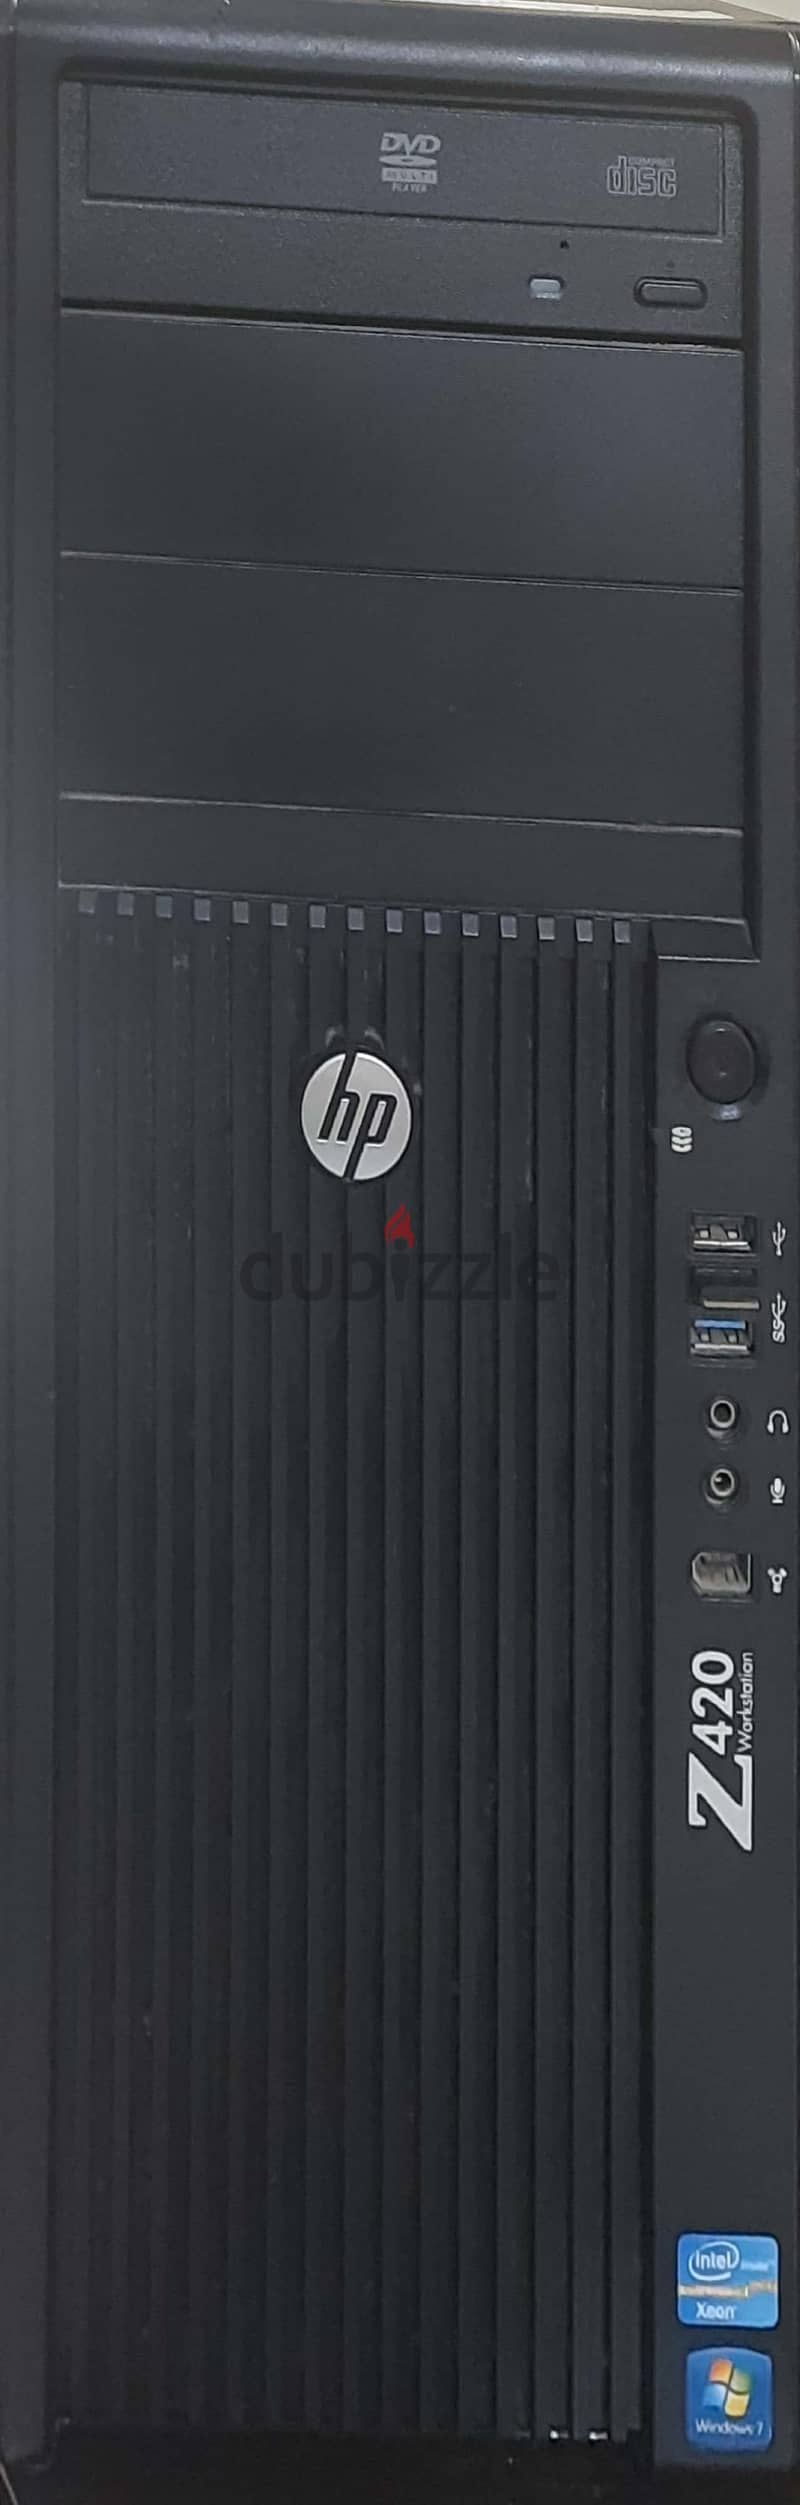 كمبيوترماركة HP أستعمال بسيط   RAM 8G   -  Hard drive one tira 5